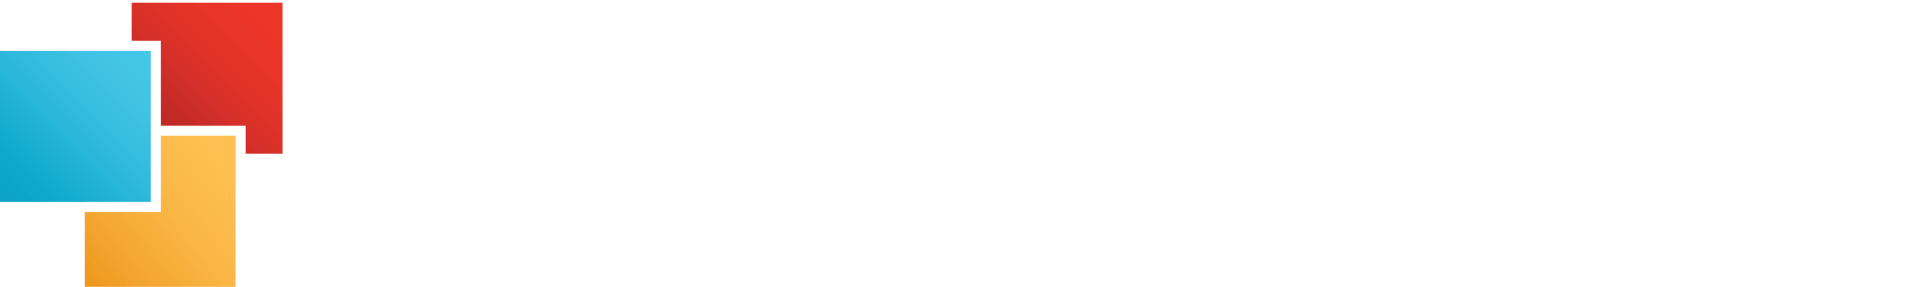 Dr. Mark Herschberger D.C. Logo